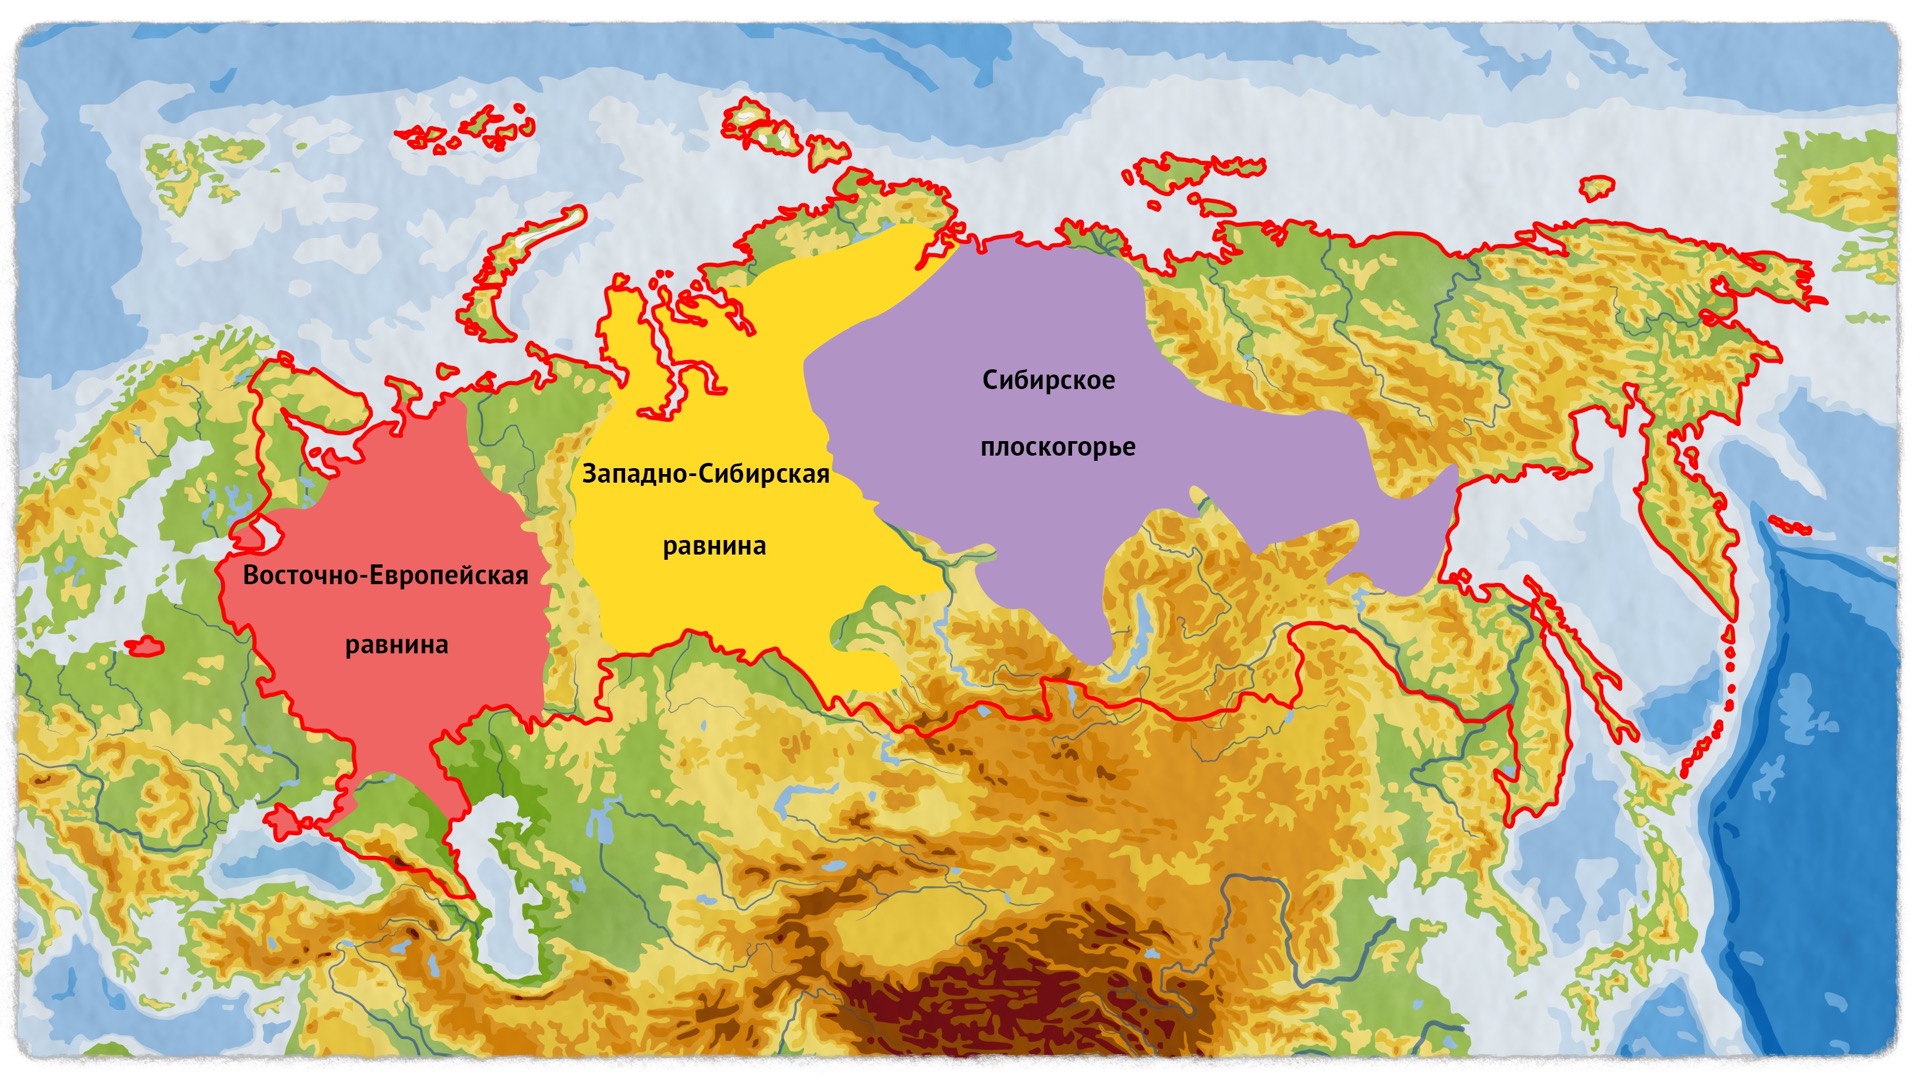 На каком материке находится восточно европейская. Восточной-европейская ра Внина карта Евразии. Восточно европейская низменность на карте Европы. Восточно-европейская низменность на карте России. Восточно-европейская равнина на карте Европы.